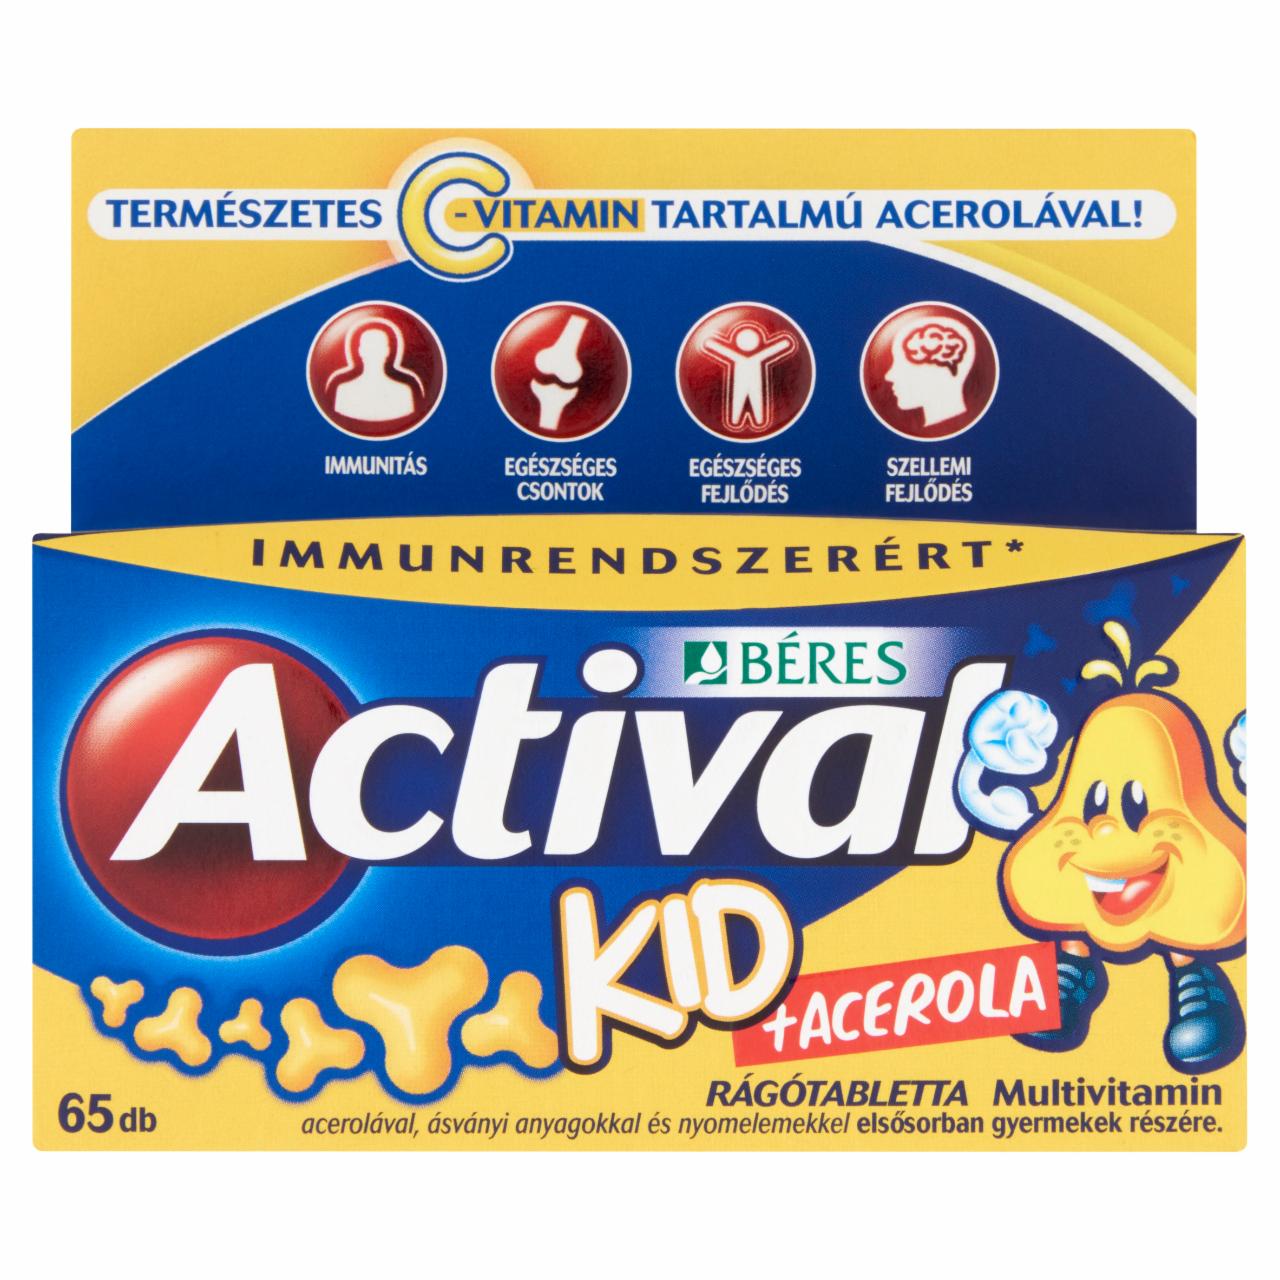 Képek - Béres Actival Kid + Acerola rágótabletta 65 db 58,5 g